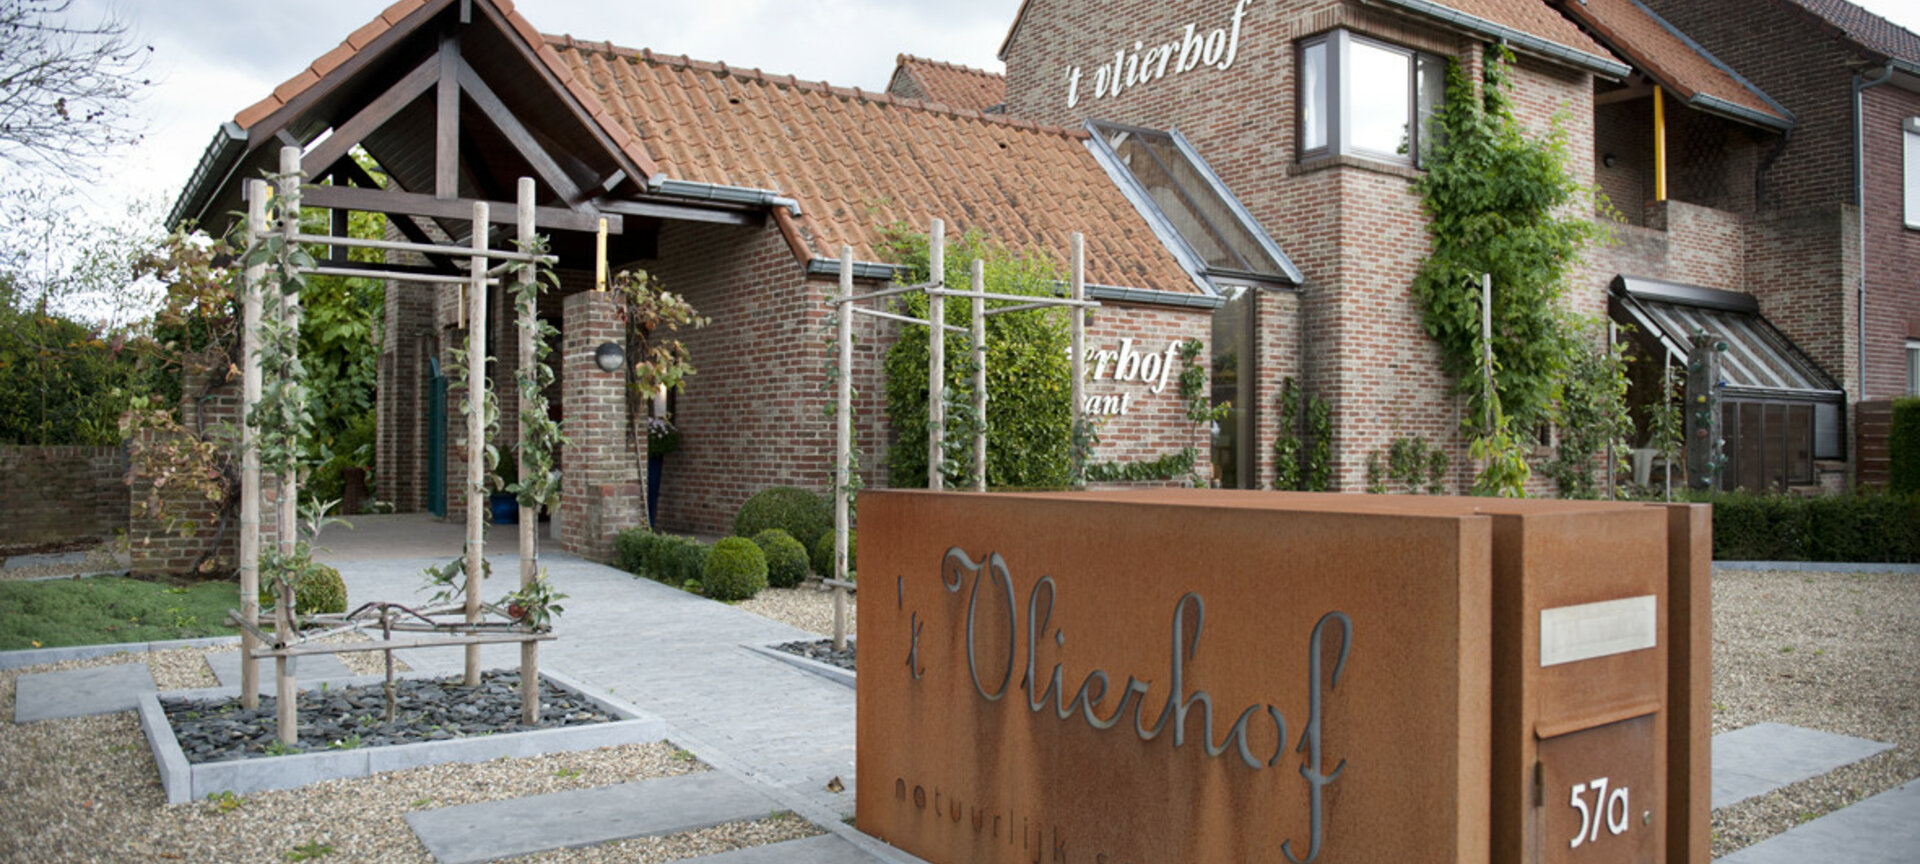 't Vlierhof - restaurant 't Vlierhof